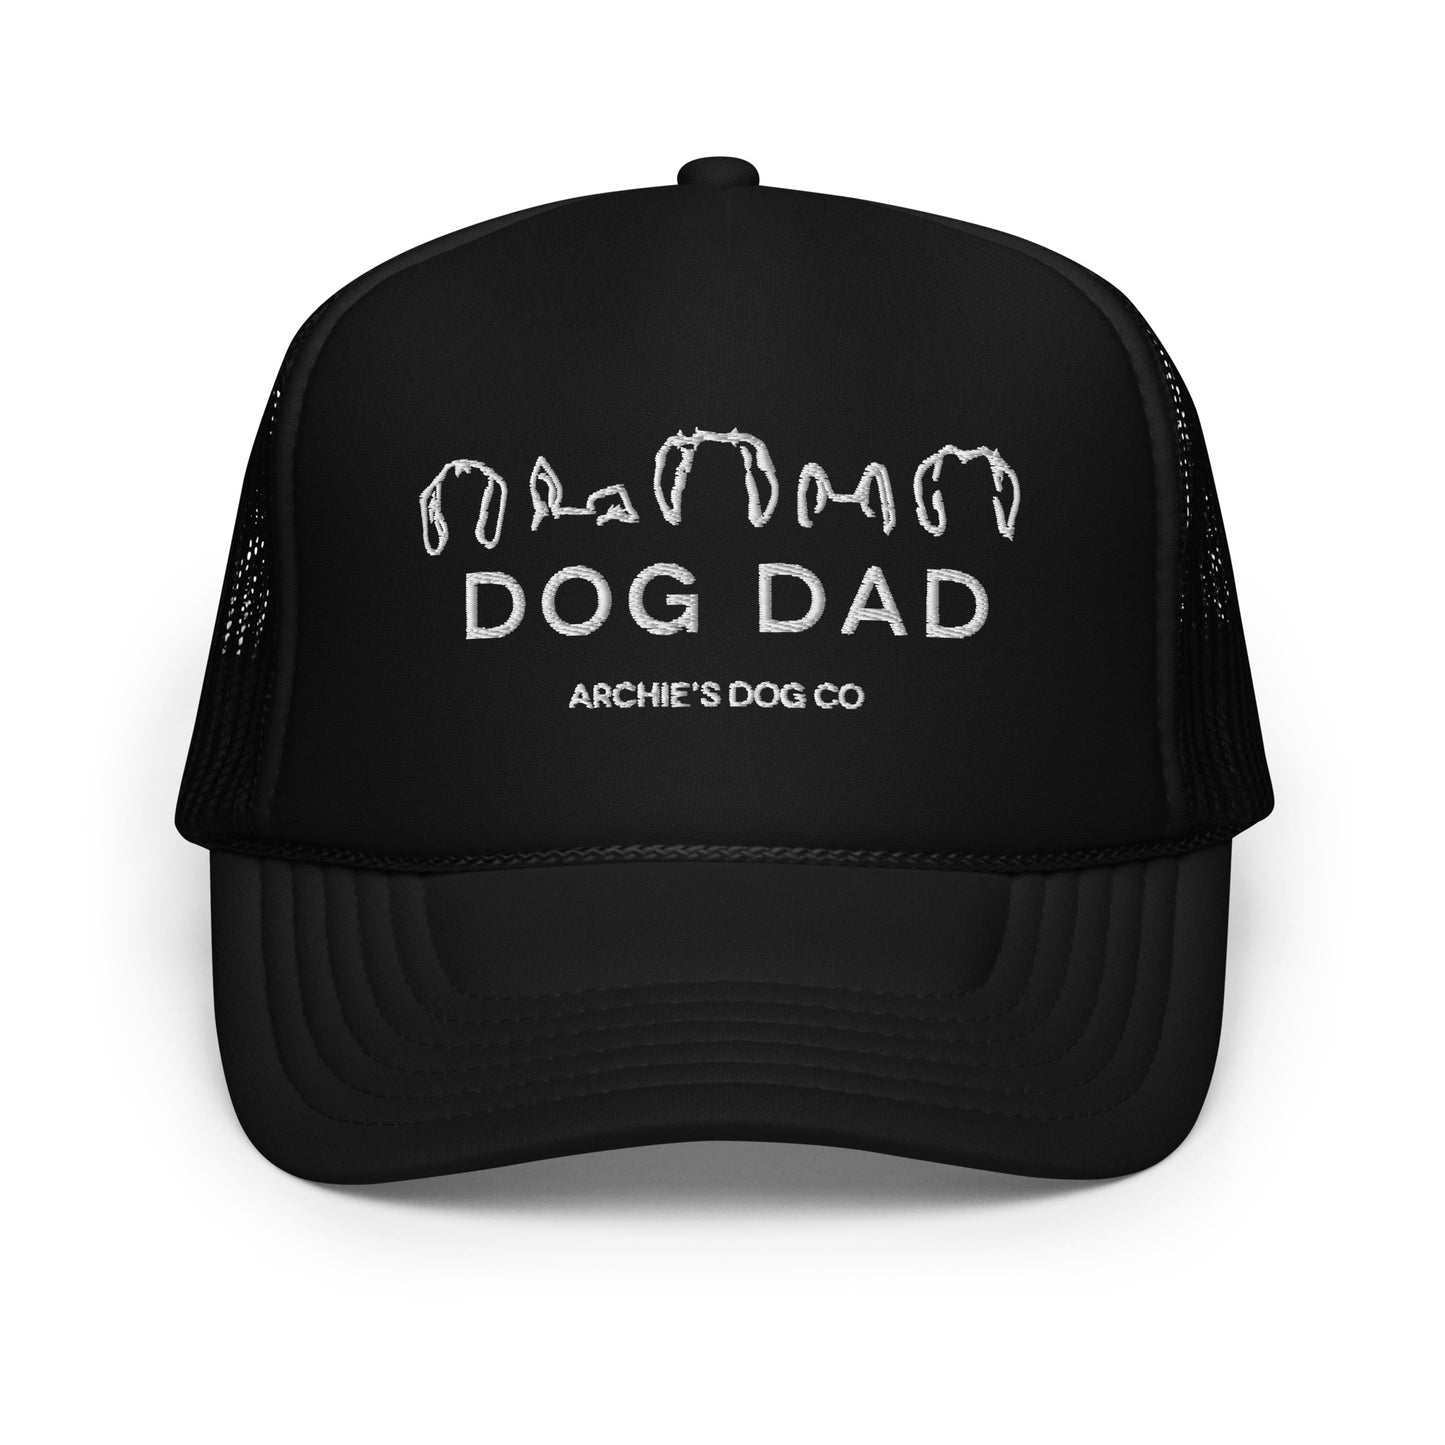 Dog Dad trucker hat